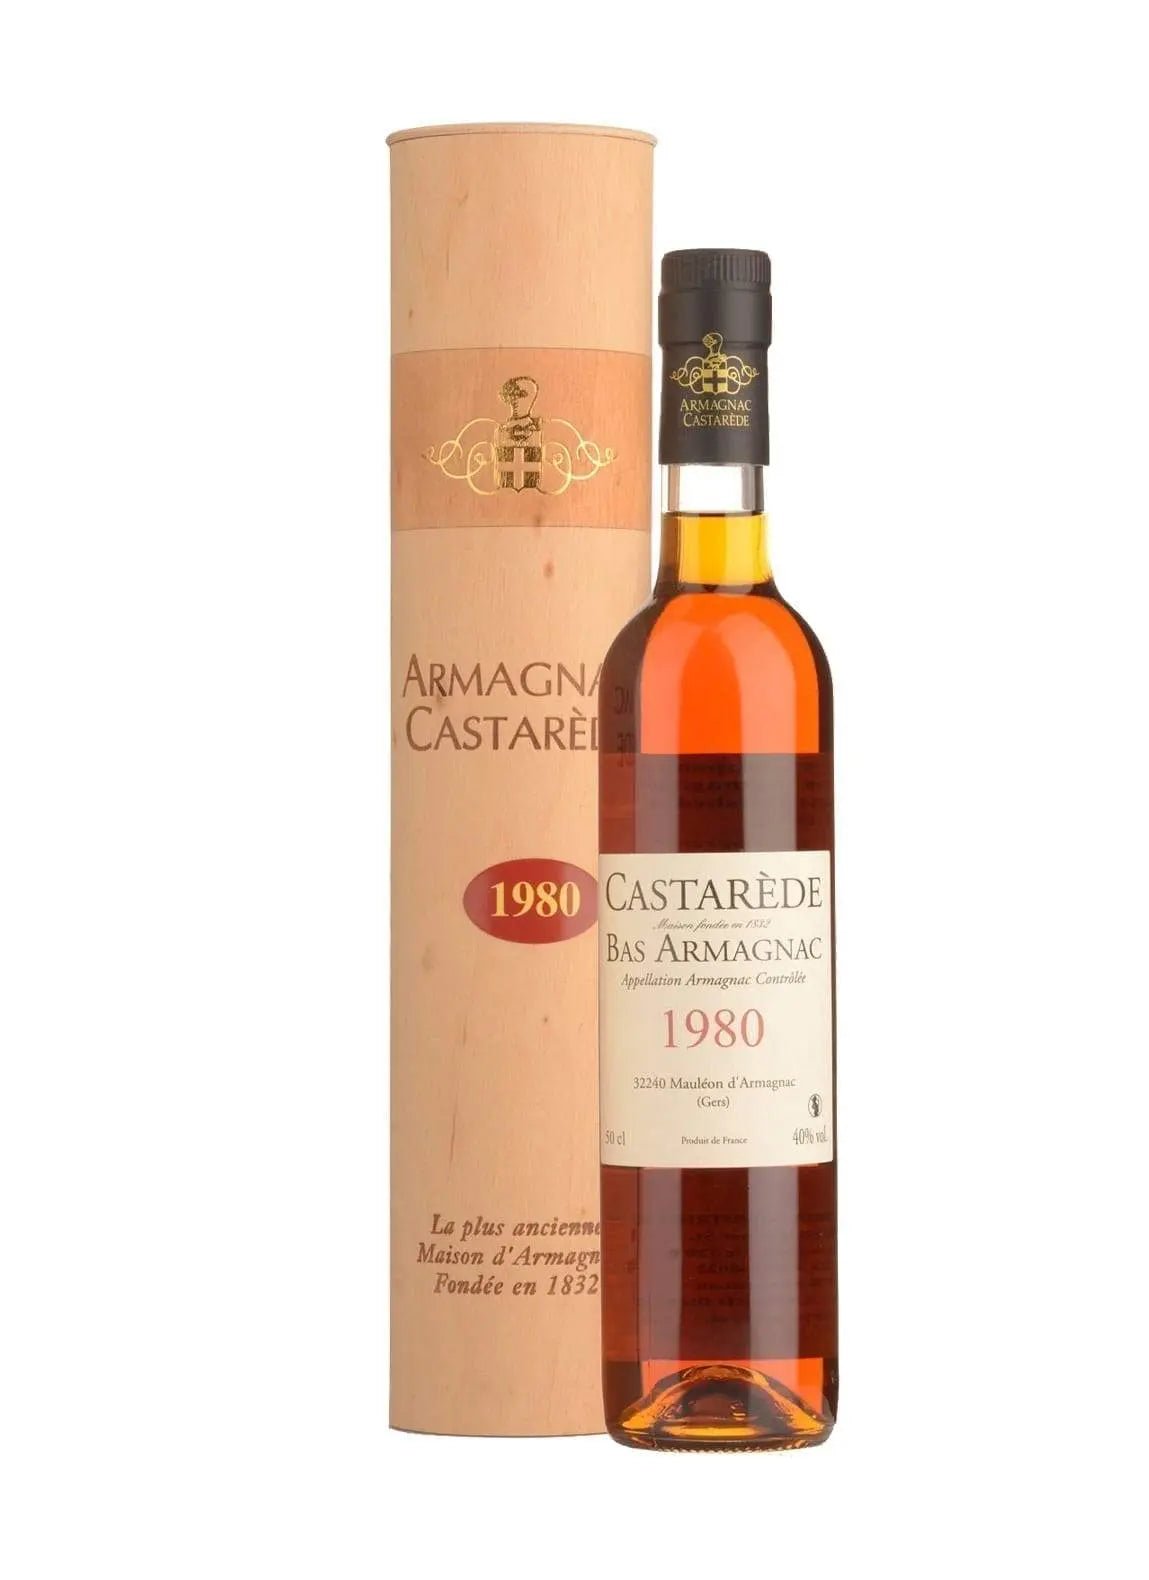 Castarede 1980 Armagnac 40% 500ml - Brandy - Liquor Wine Cave